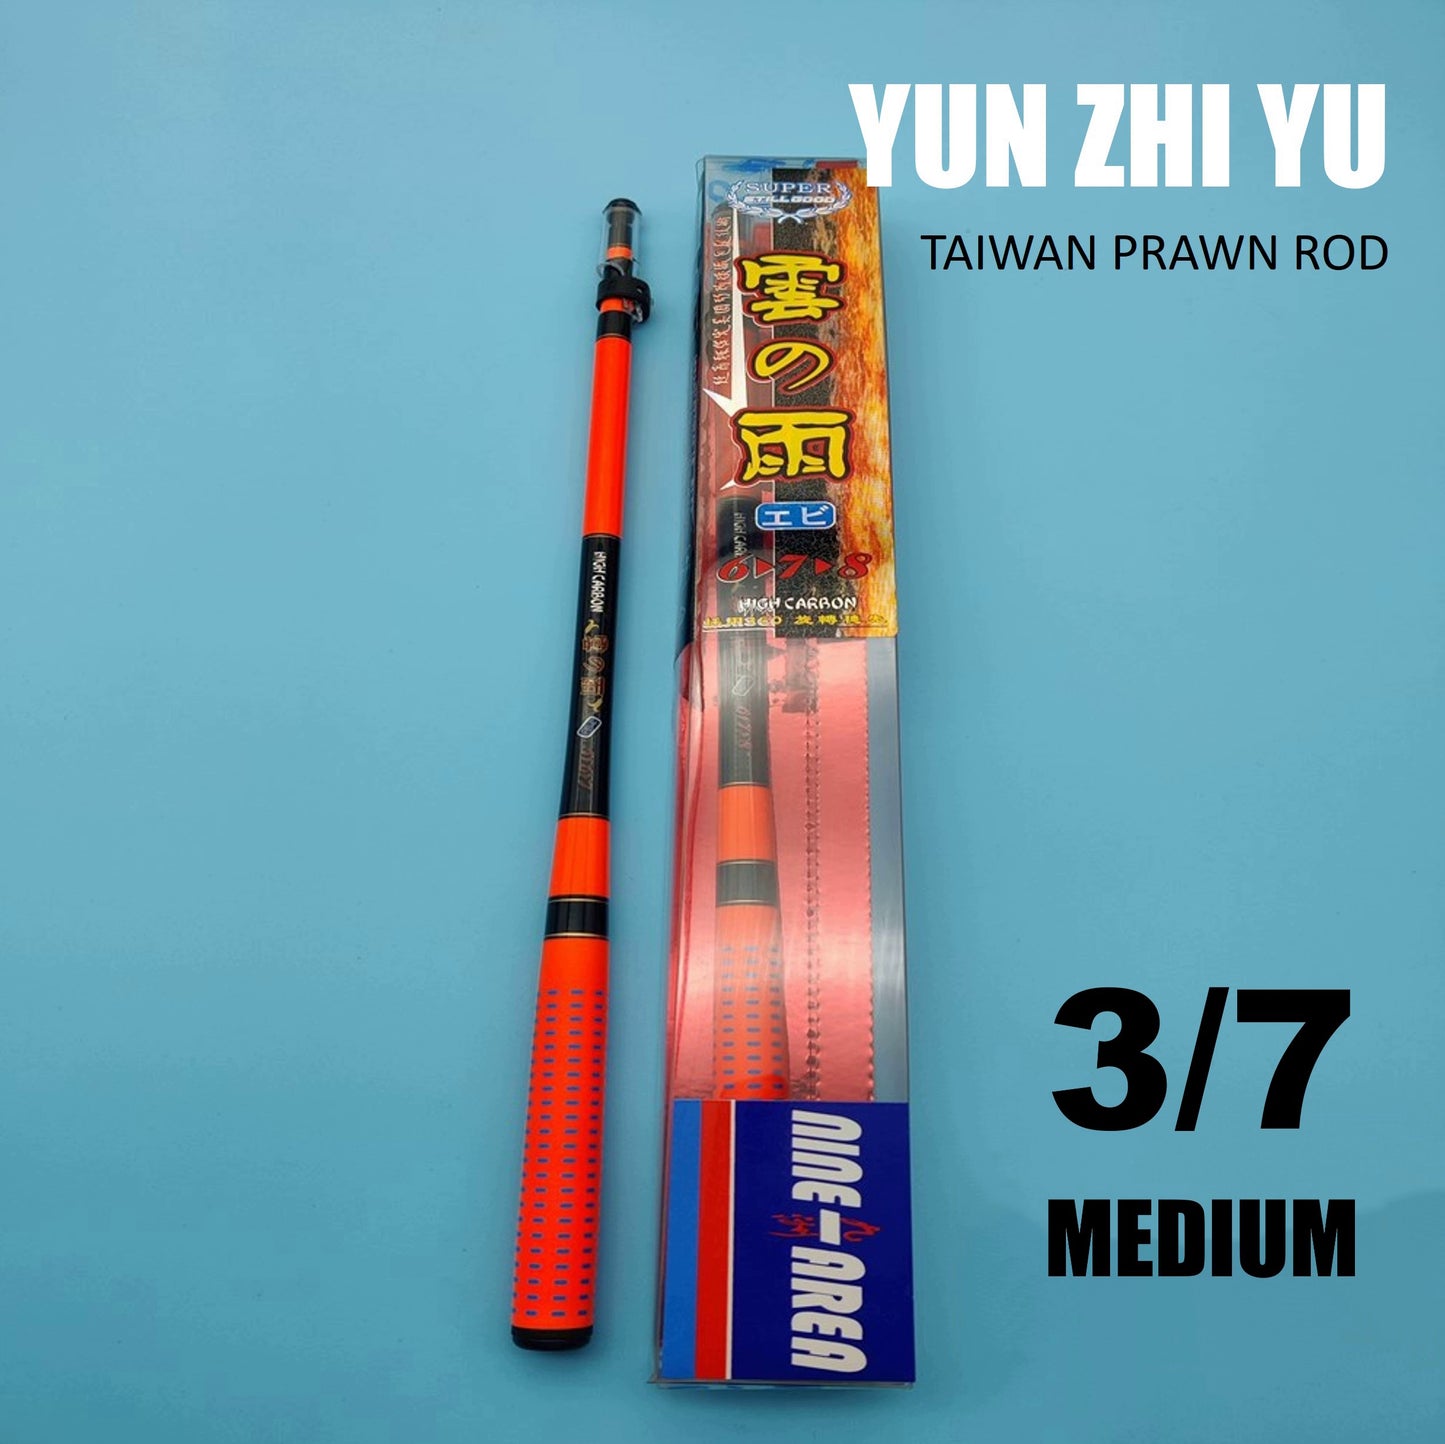 Yun Zhi Yu Prawn rod PR027